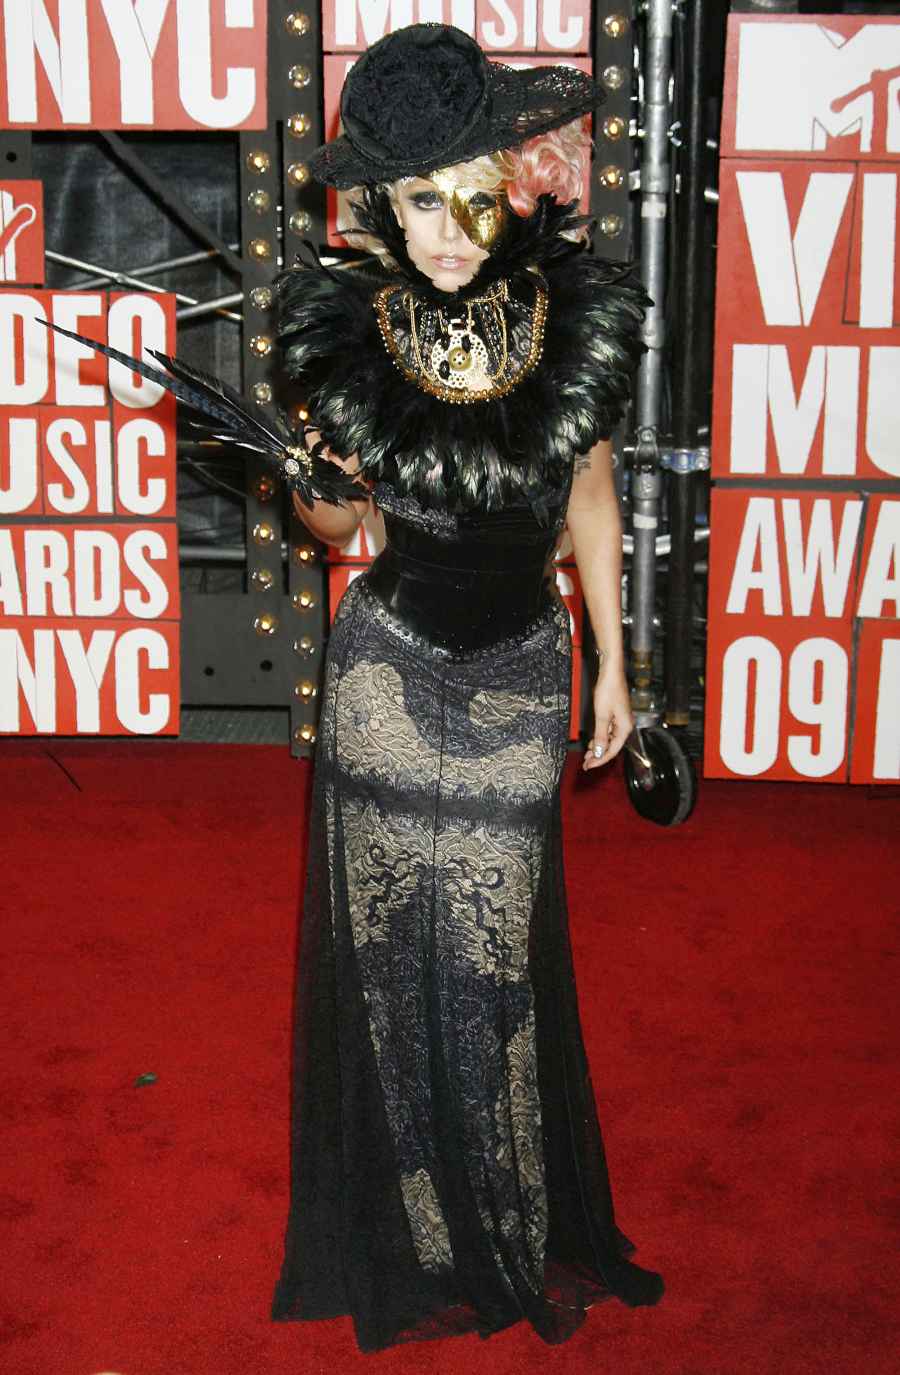 Wildest VMA Looks - Lady Gaga, 2009